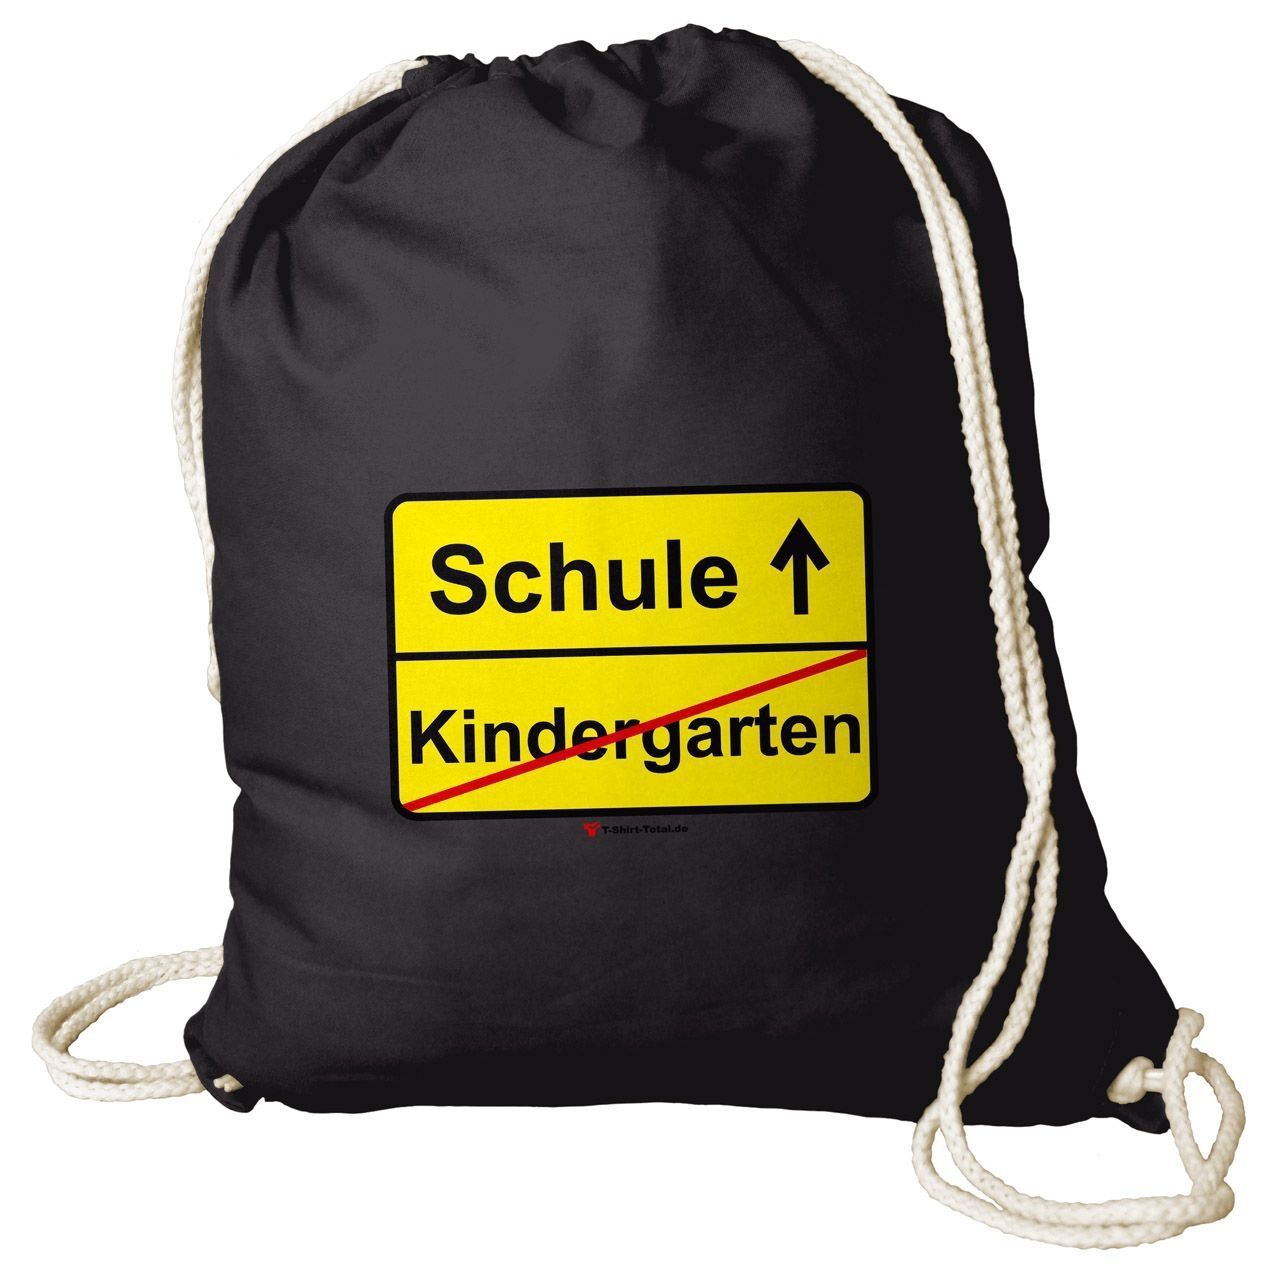 Kindergarten Schule Rucksack Beutel schwarz